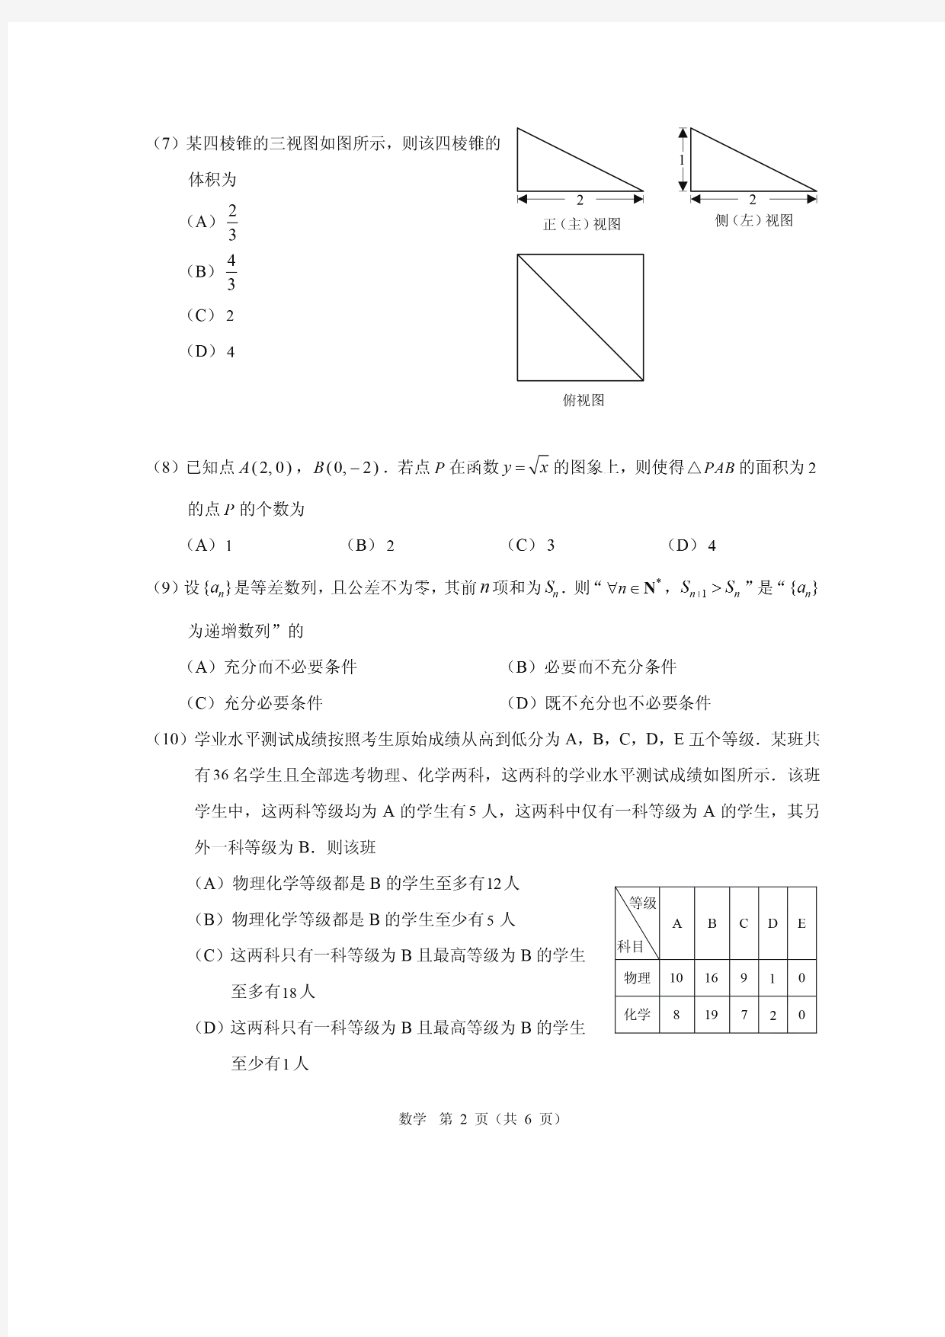 2020年北京市高考适应性测试题数学